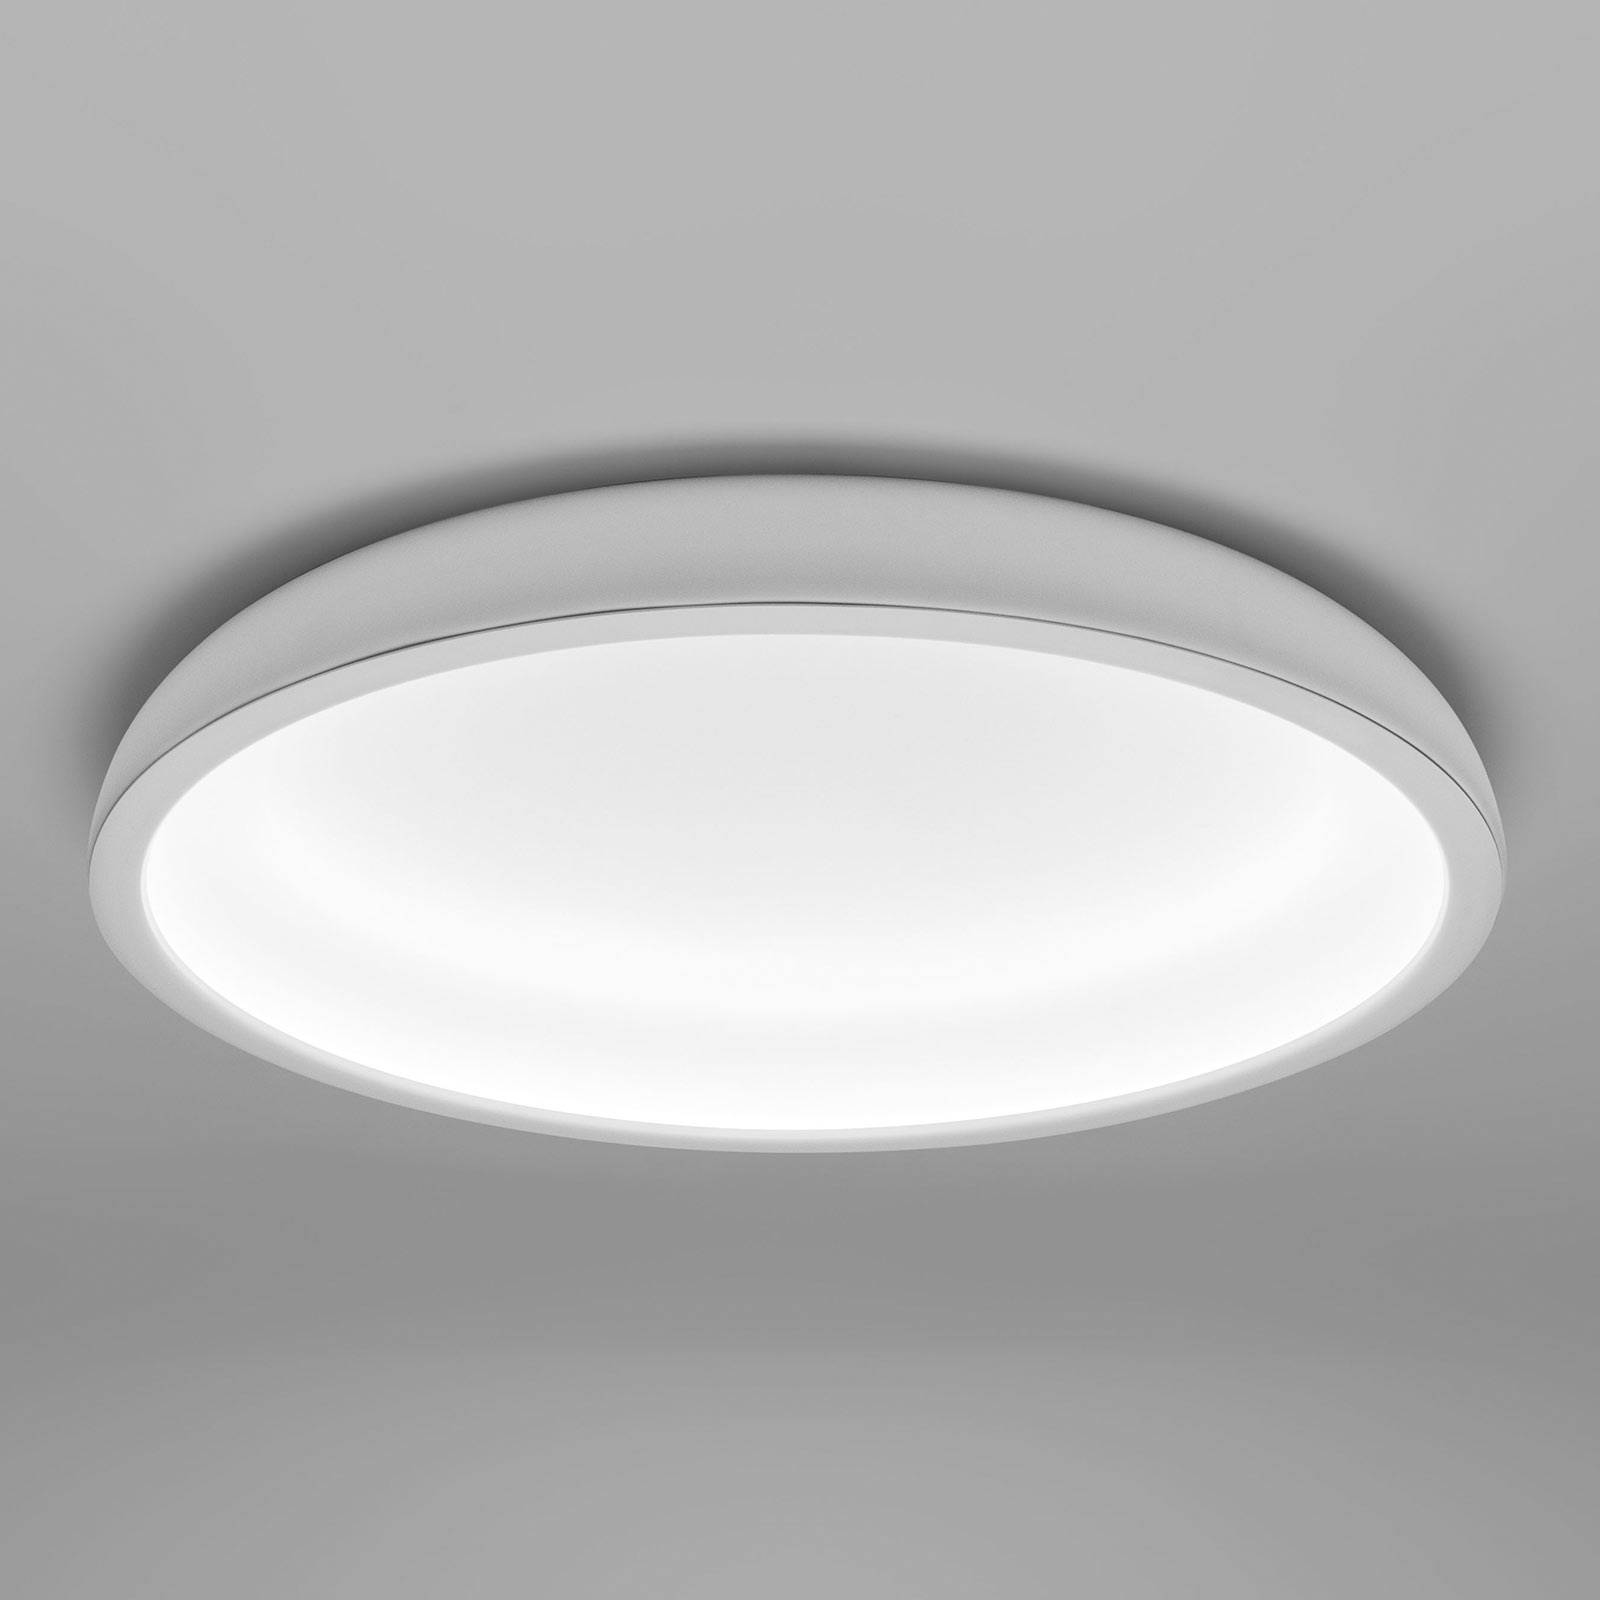 Lampa sufitowa LED Reflexio, Ø 46cm, biała